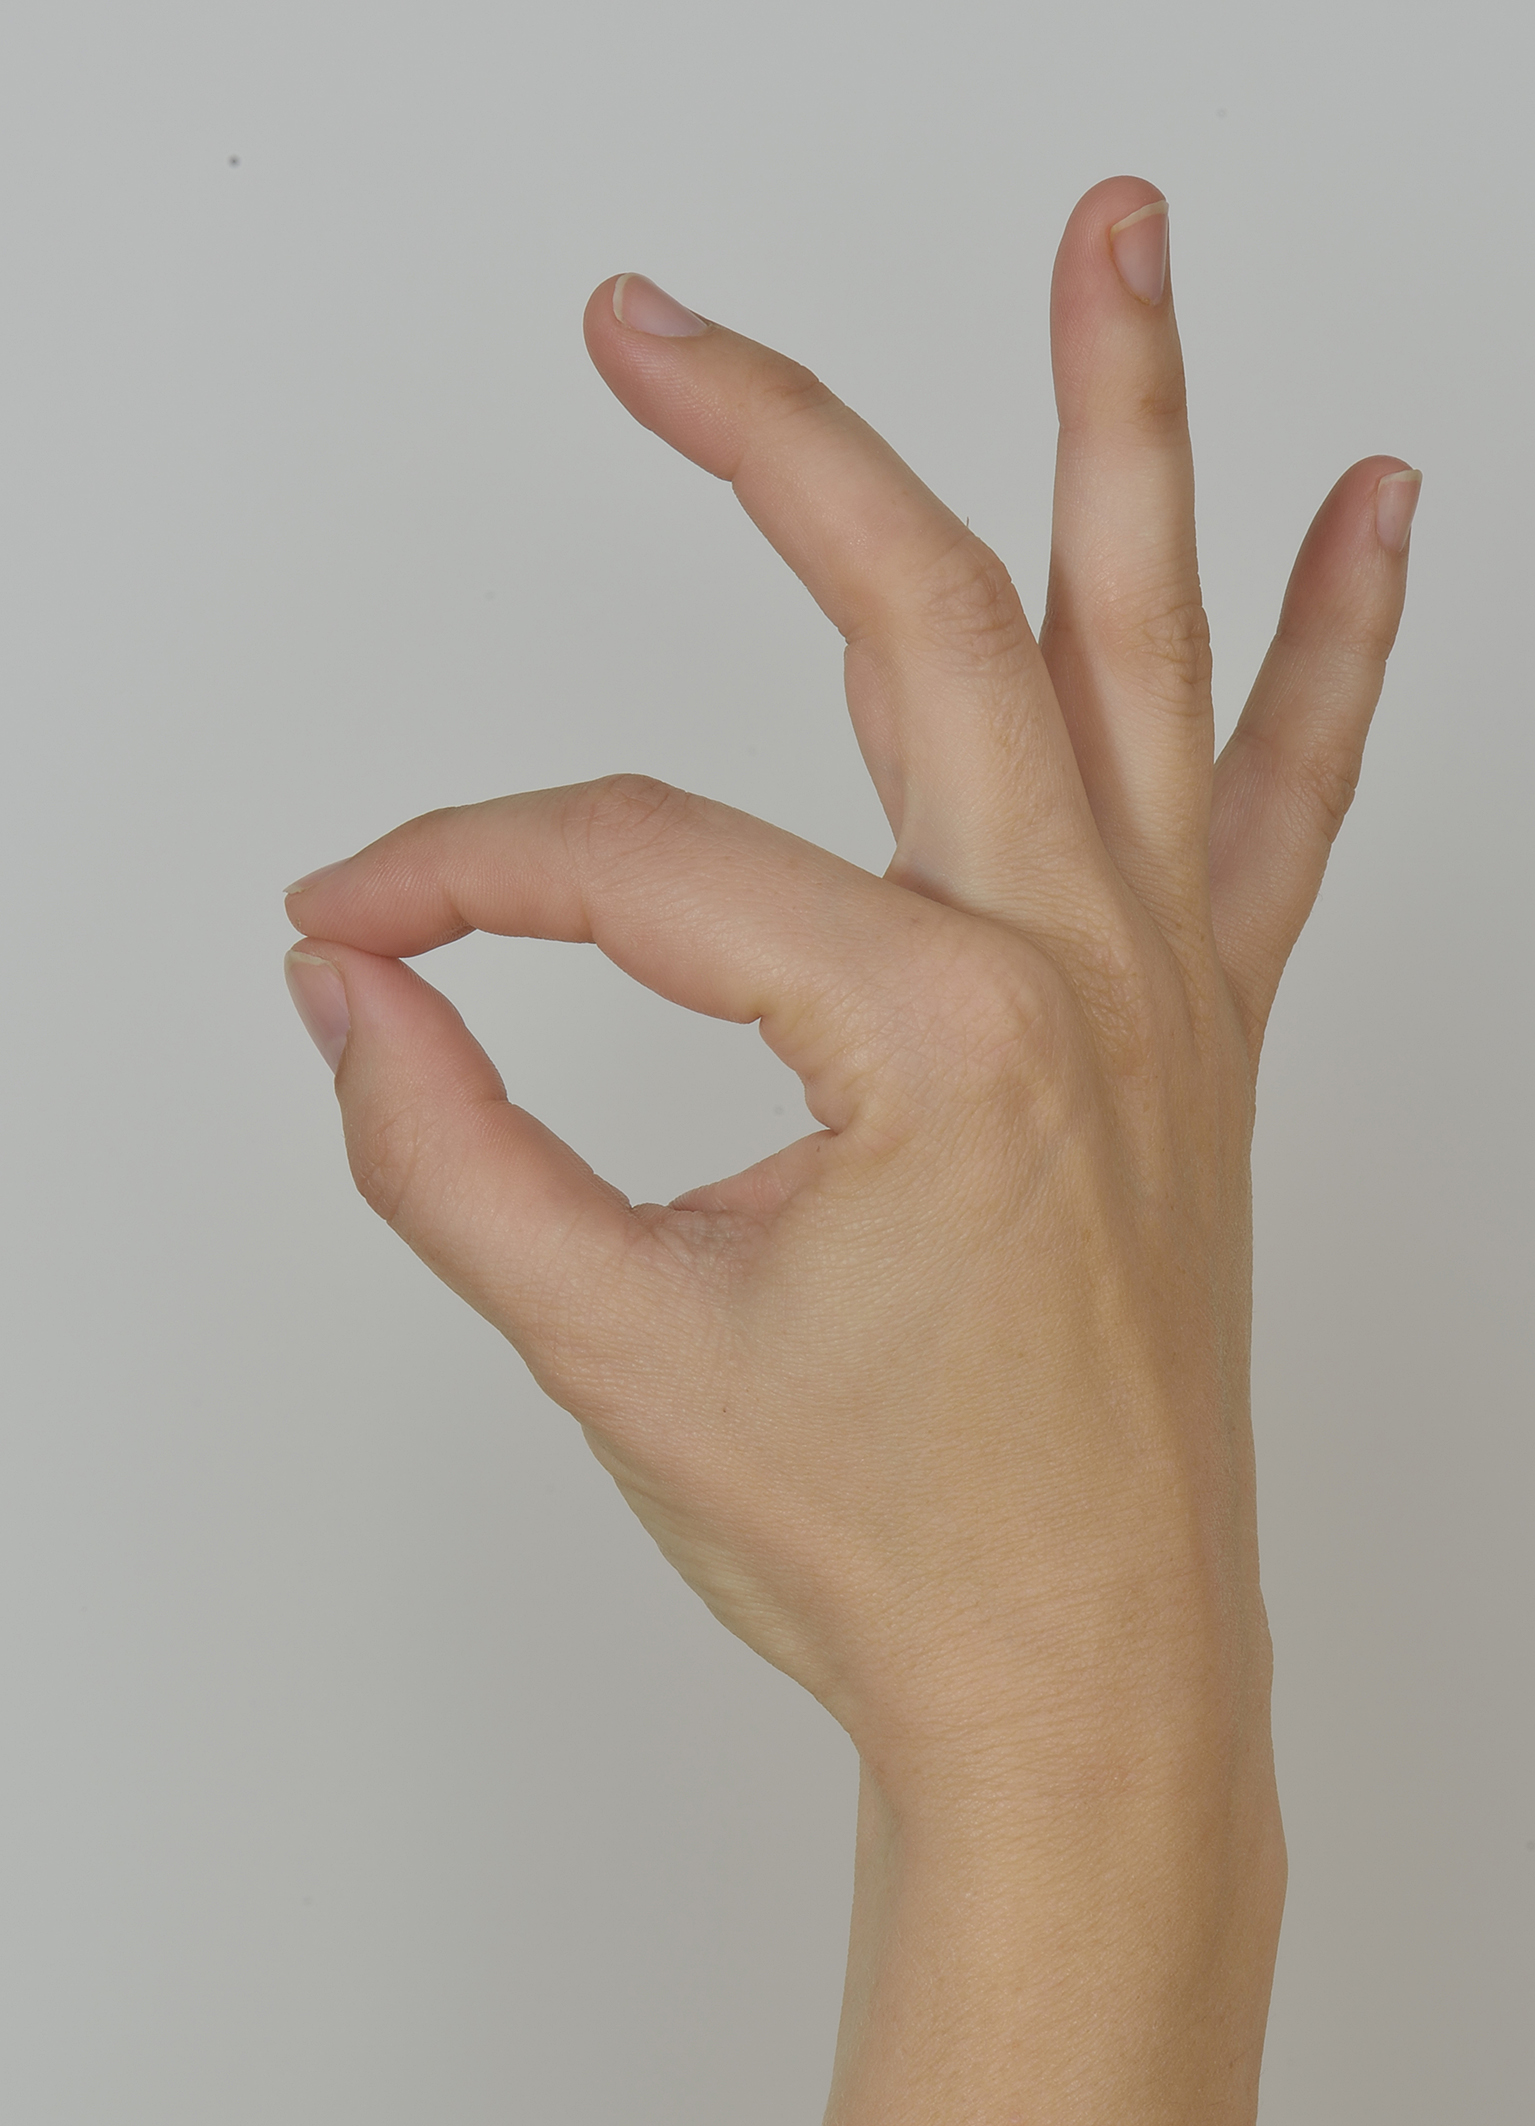 Foto oefening 5: duim tegen vingertoppen